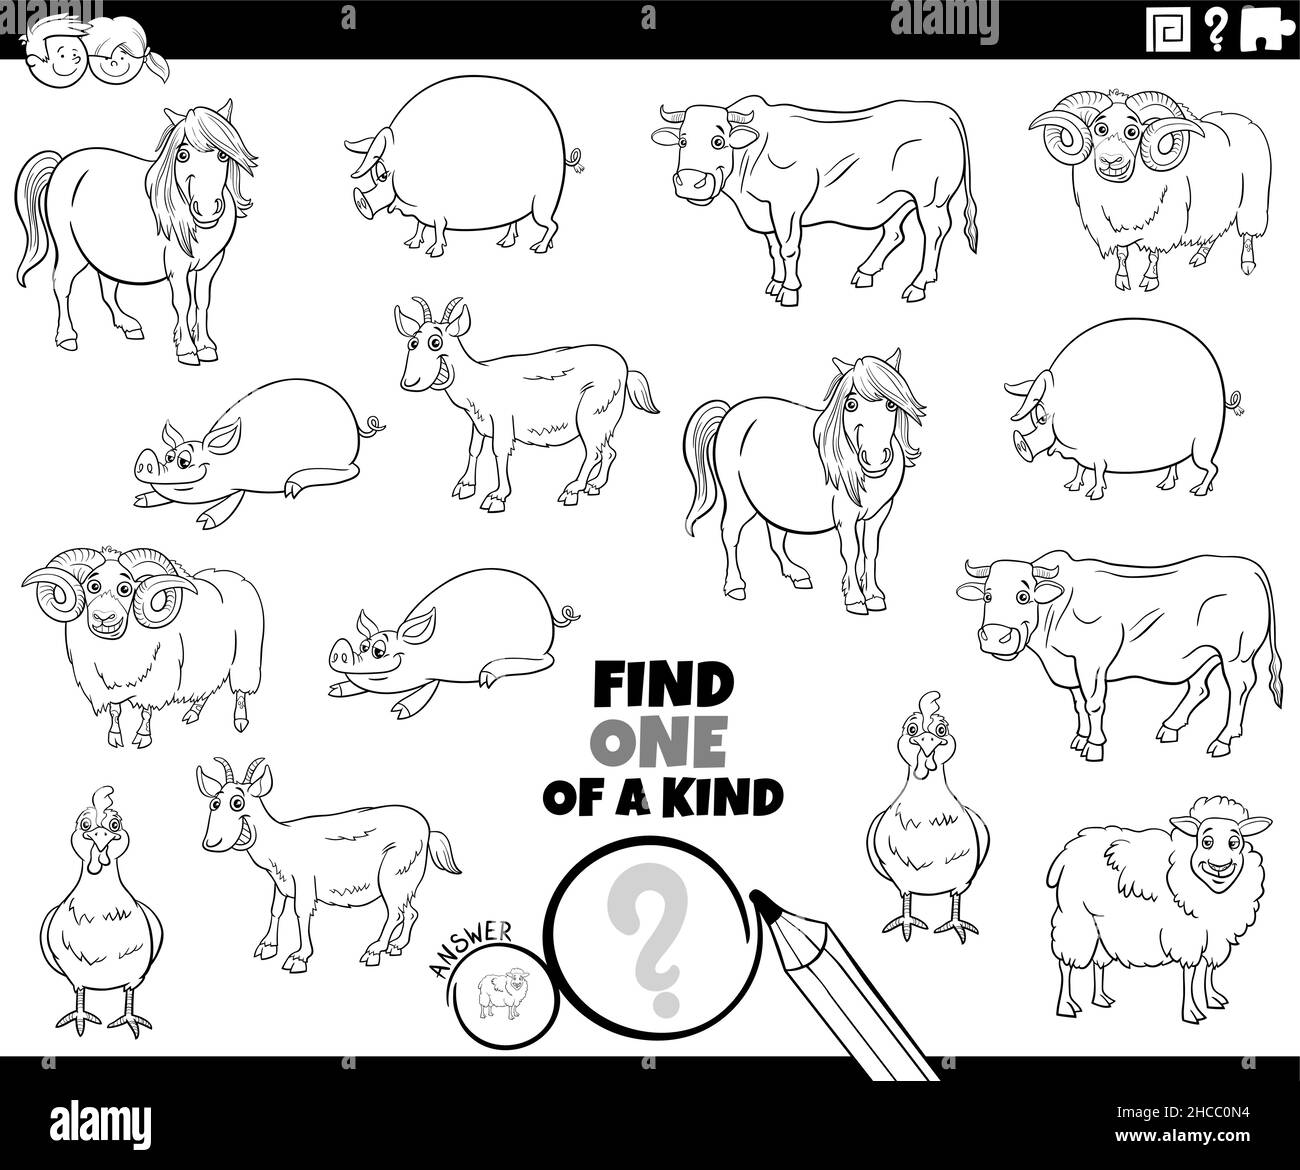 Illustration de dessin animé noir et blanc de Find One of a genre image tâche éducative avec drôle de caractères d'animal de ferme de coloration page de livre Illustration de Vecteur